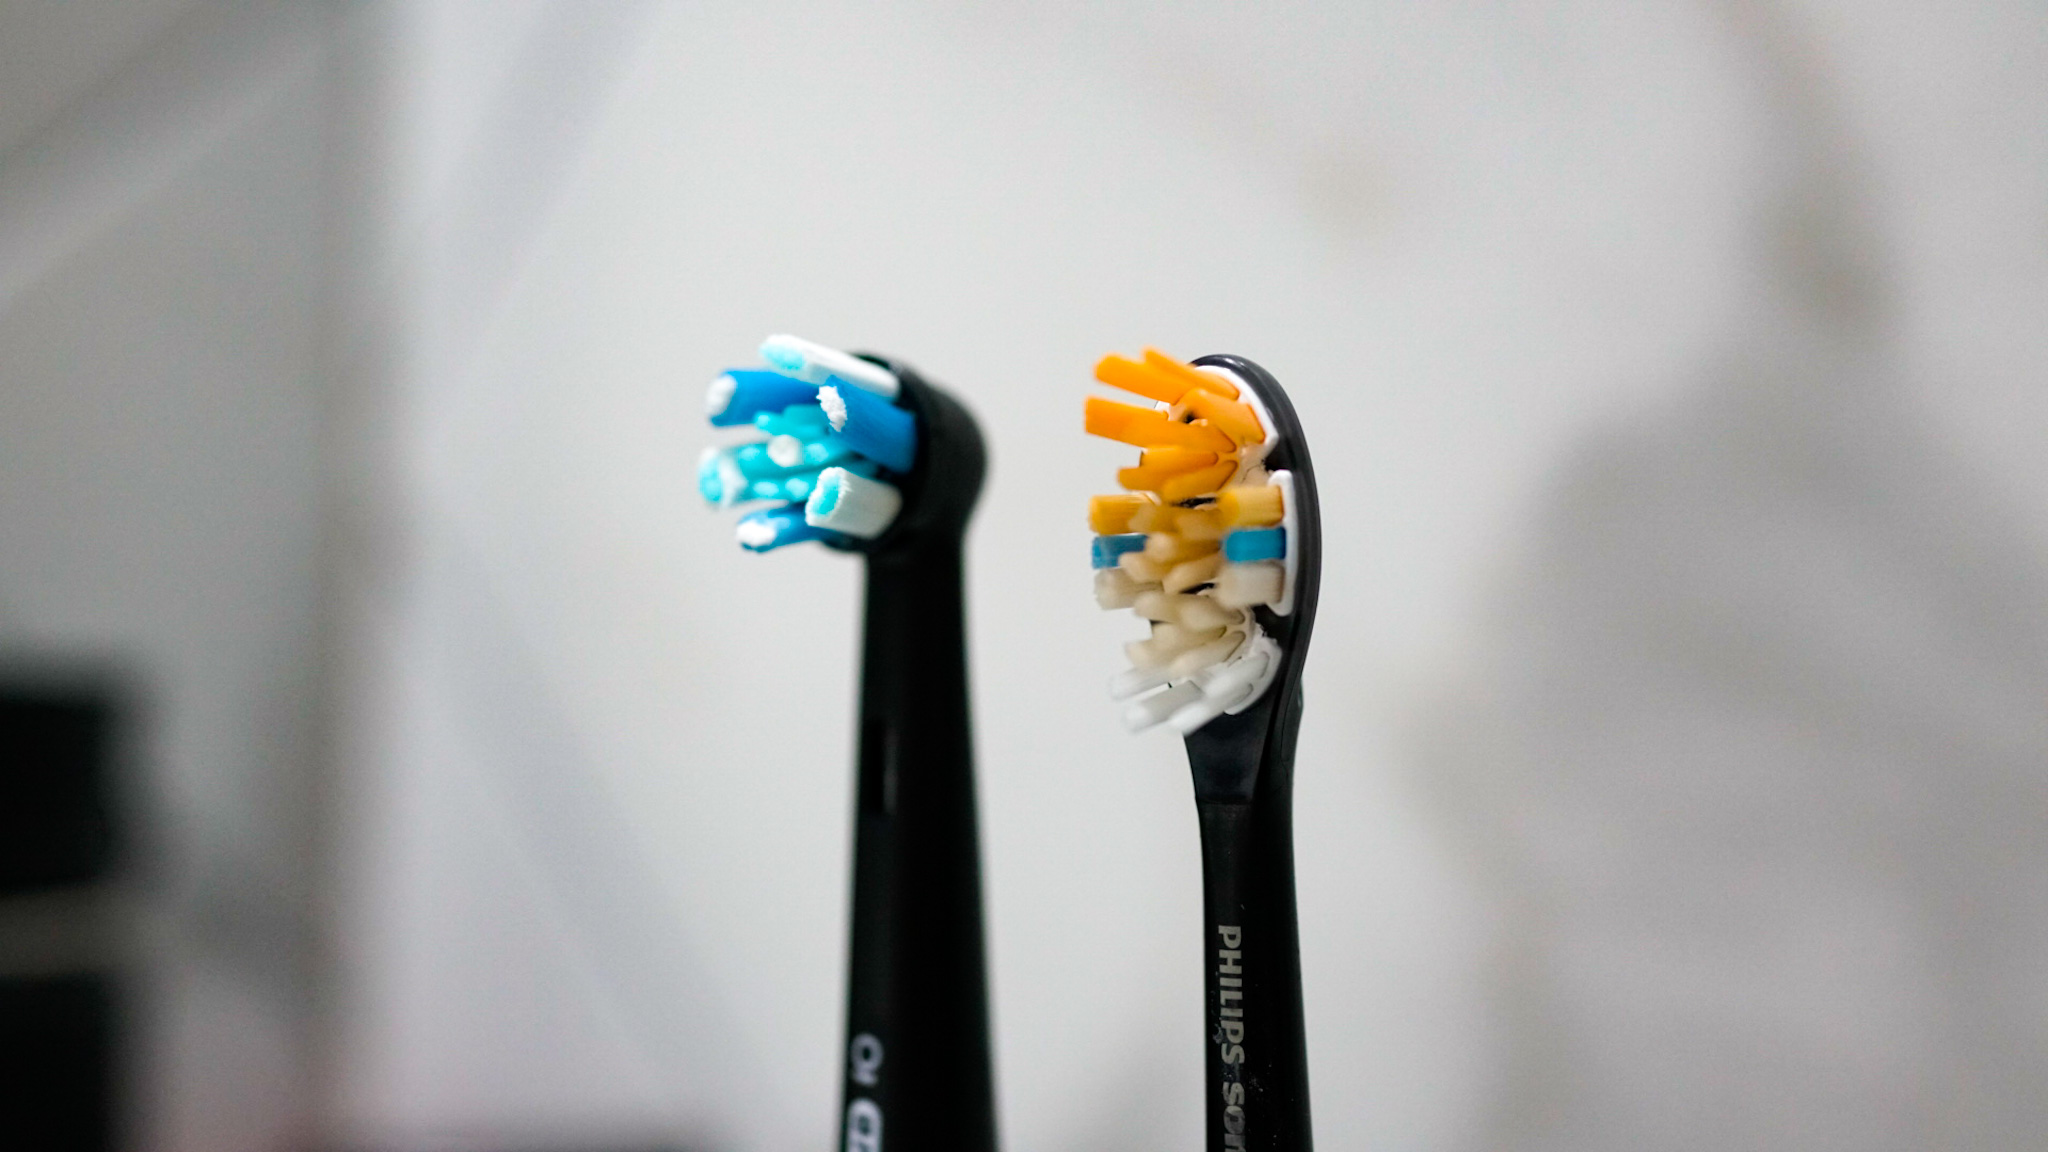 As cabeças de escova de uma escova de dentes oral B e Philips Sonicare colocou lado a lado, a fim de comparar as diferenças entre eles